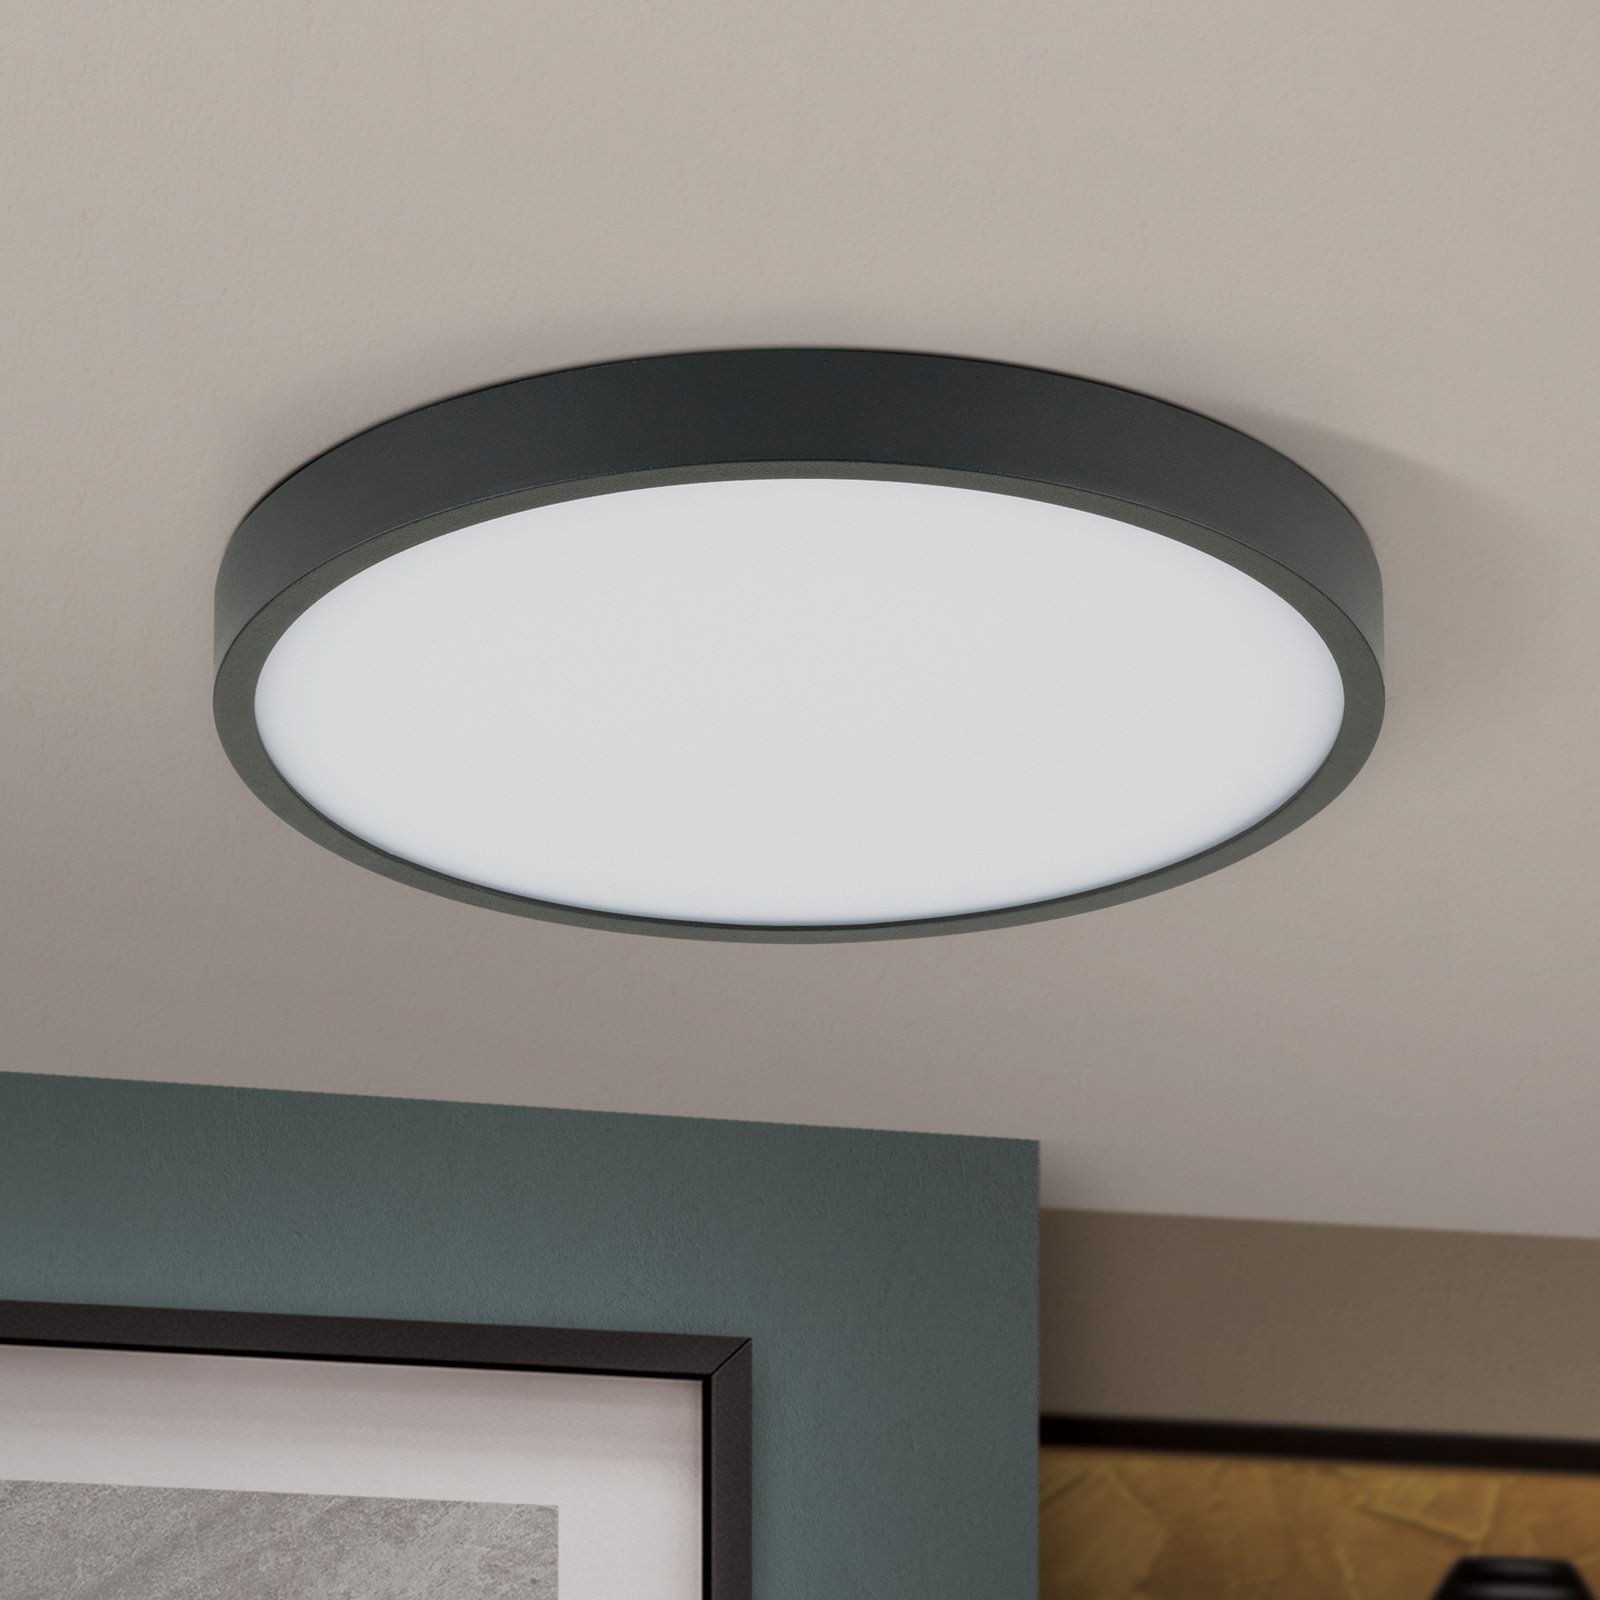 LED ceiling light Bully in black, 3,000 K, Ø24cm